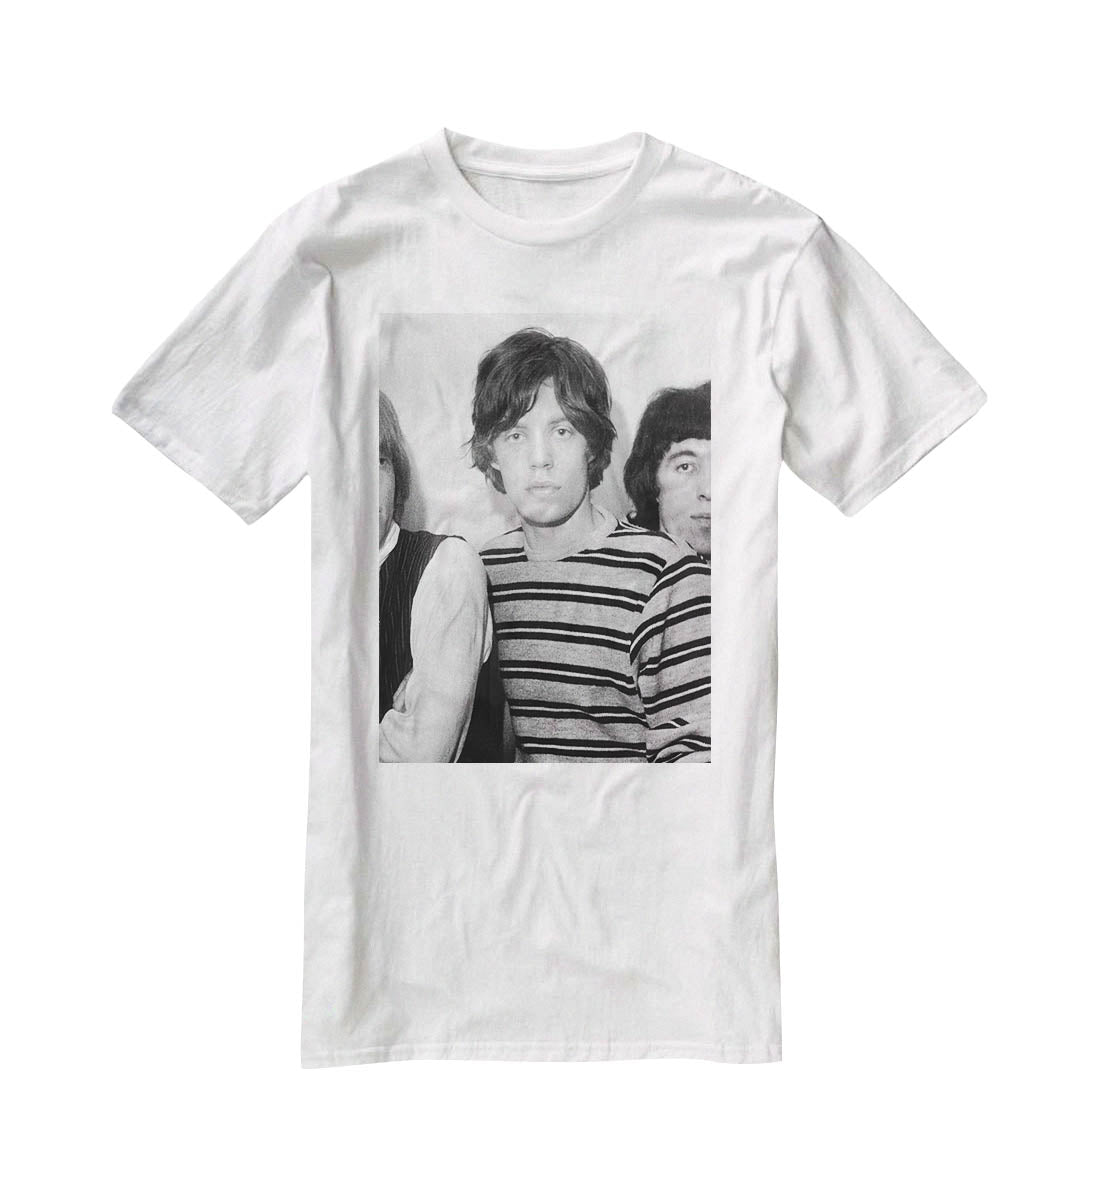 Mick Jagger and mates T-Shirt - Canvas Art Rocks - 5